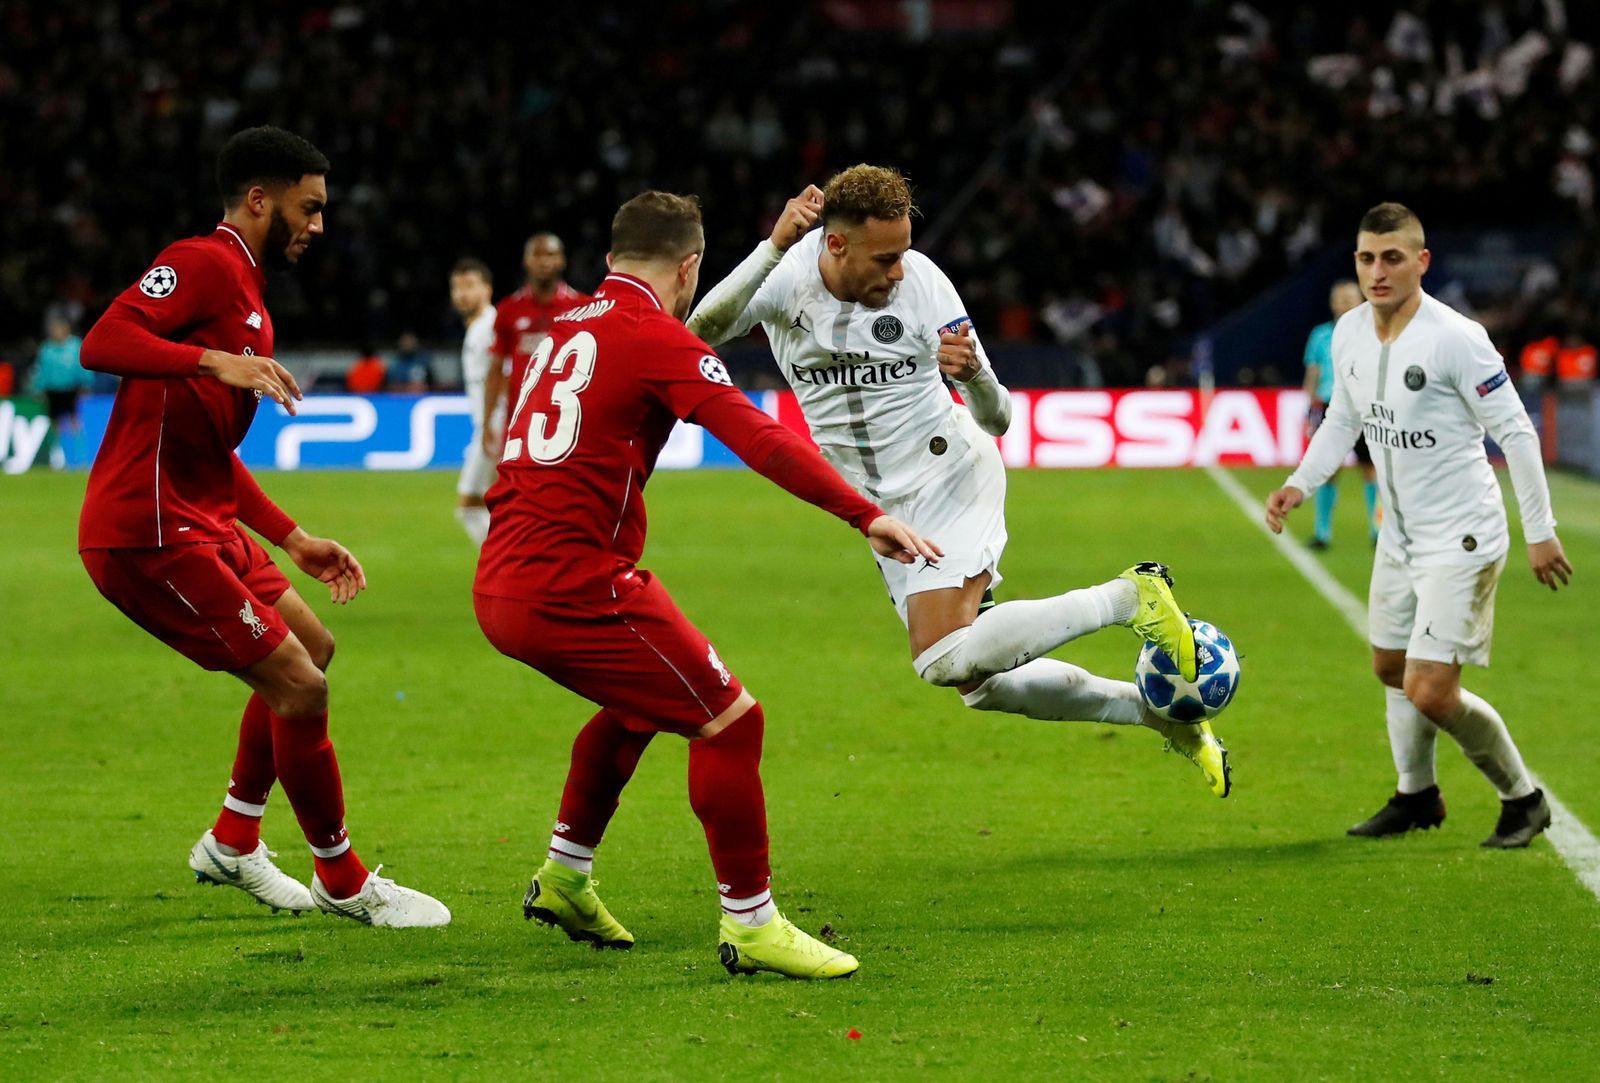 fotbal, Liga mistrů 2018/2019, Paris St. Germain - Liverpool, Neymar a jeho parádní trik